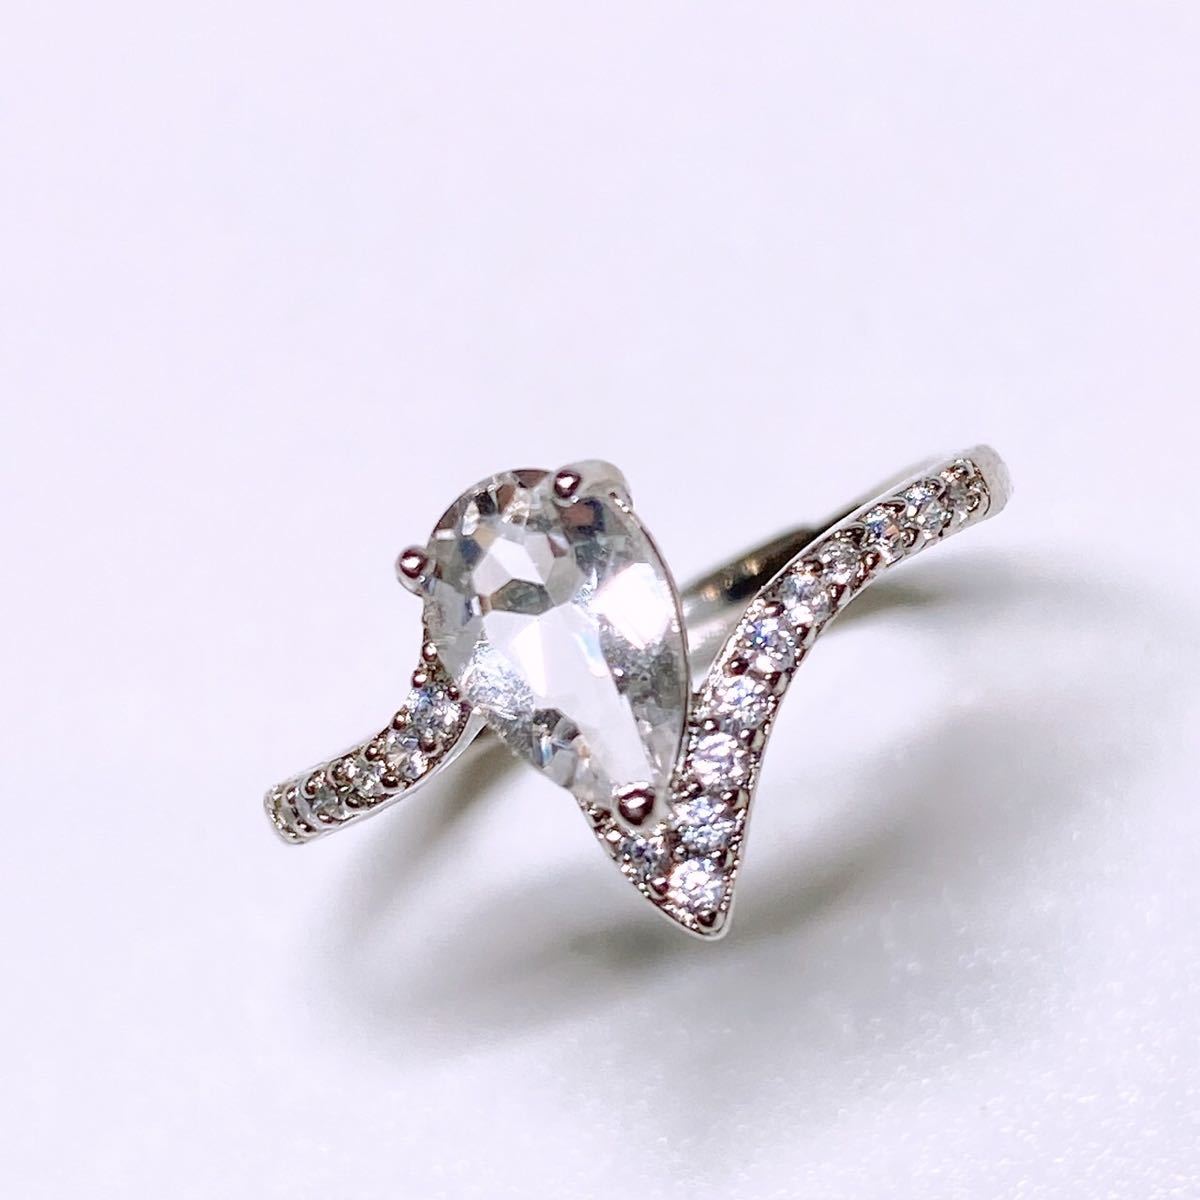  высший класс разрозненный натуральный Brazil производство кристалл 1ct драгоценнный камень свободный размер кольцо кольцо кольцо 